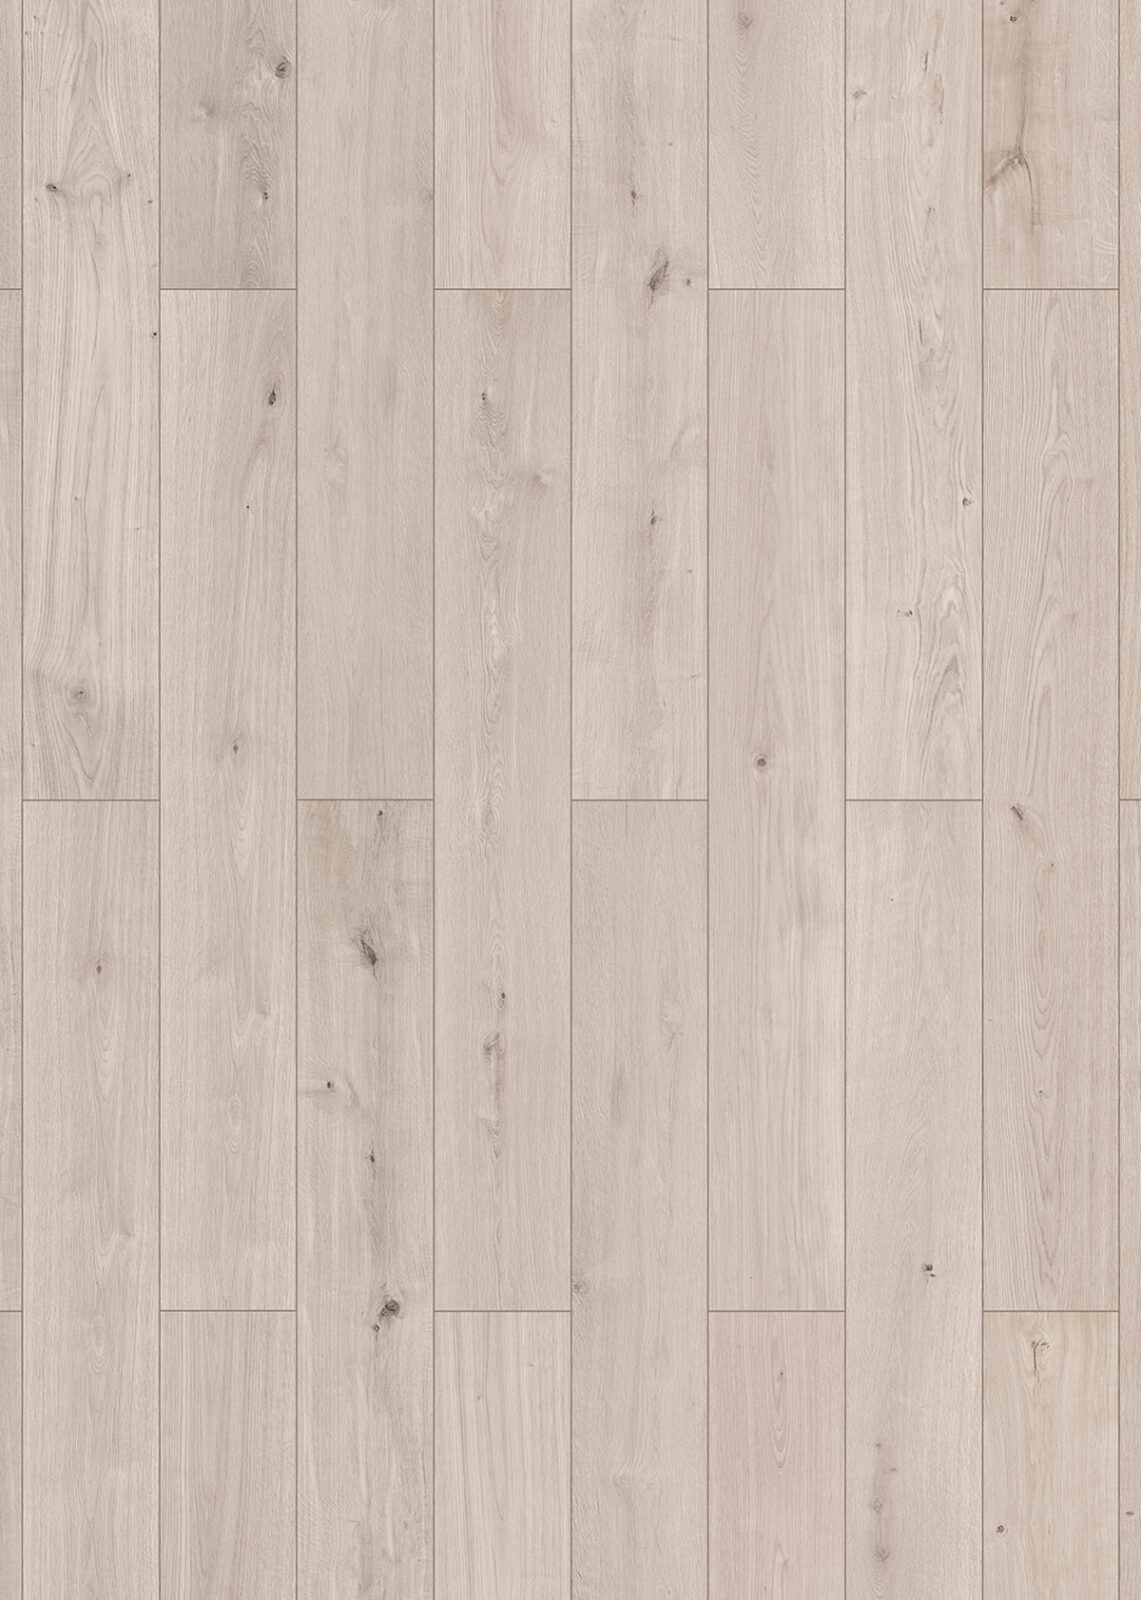 white laminate flooring texture